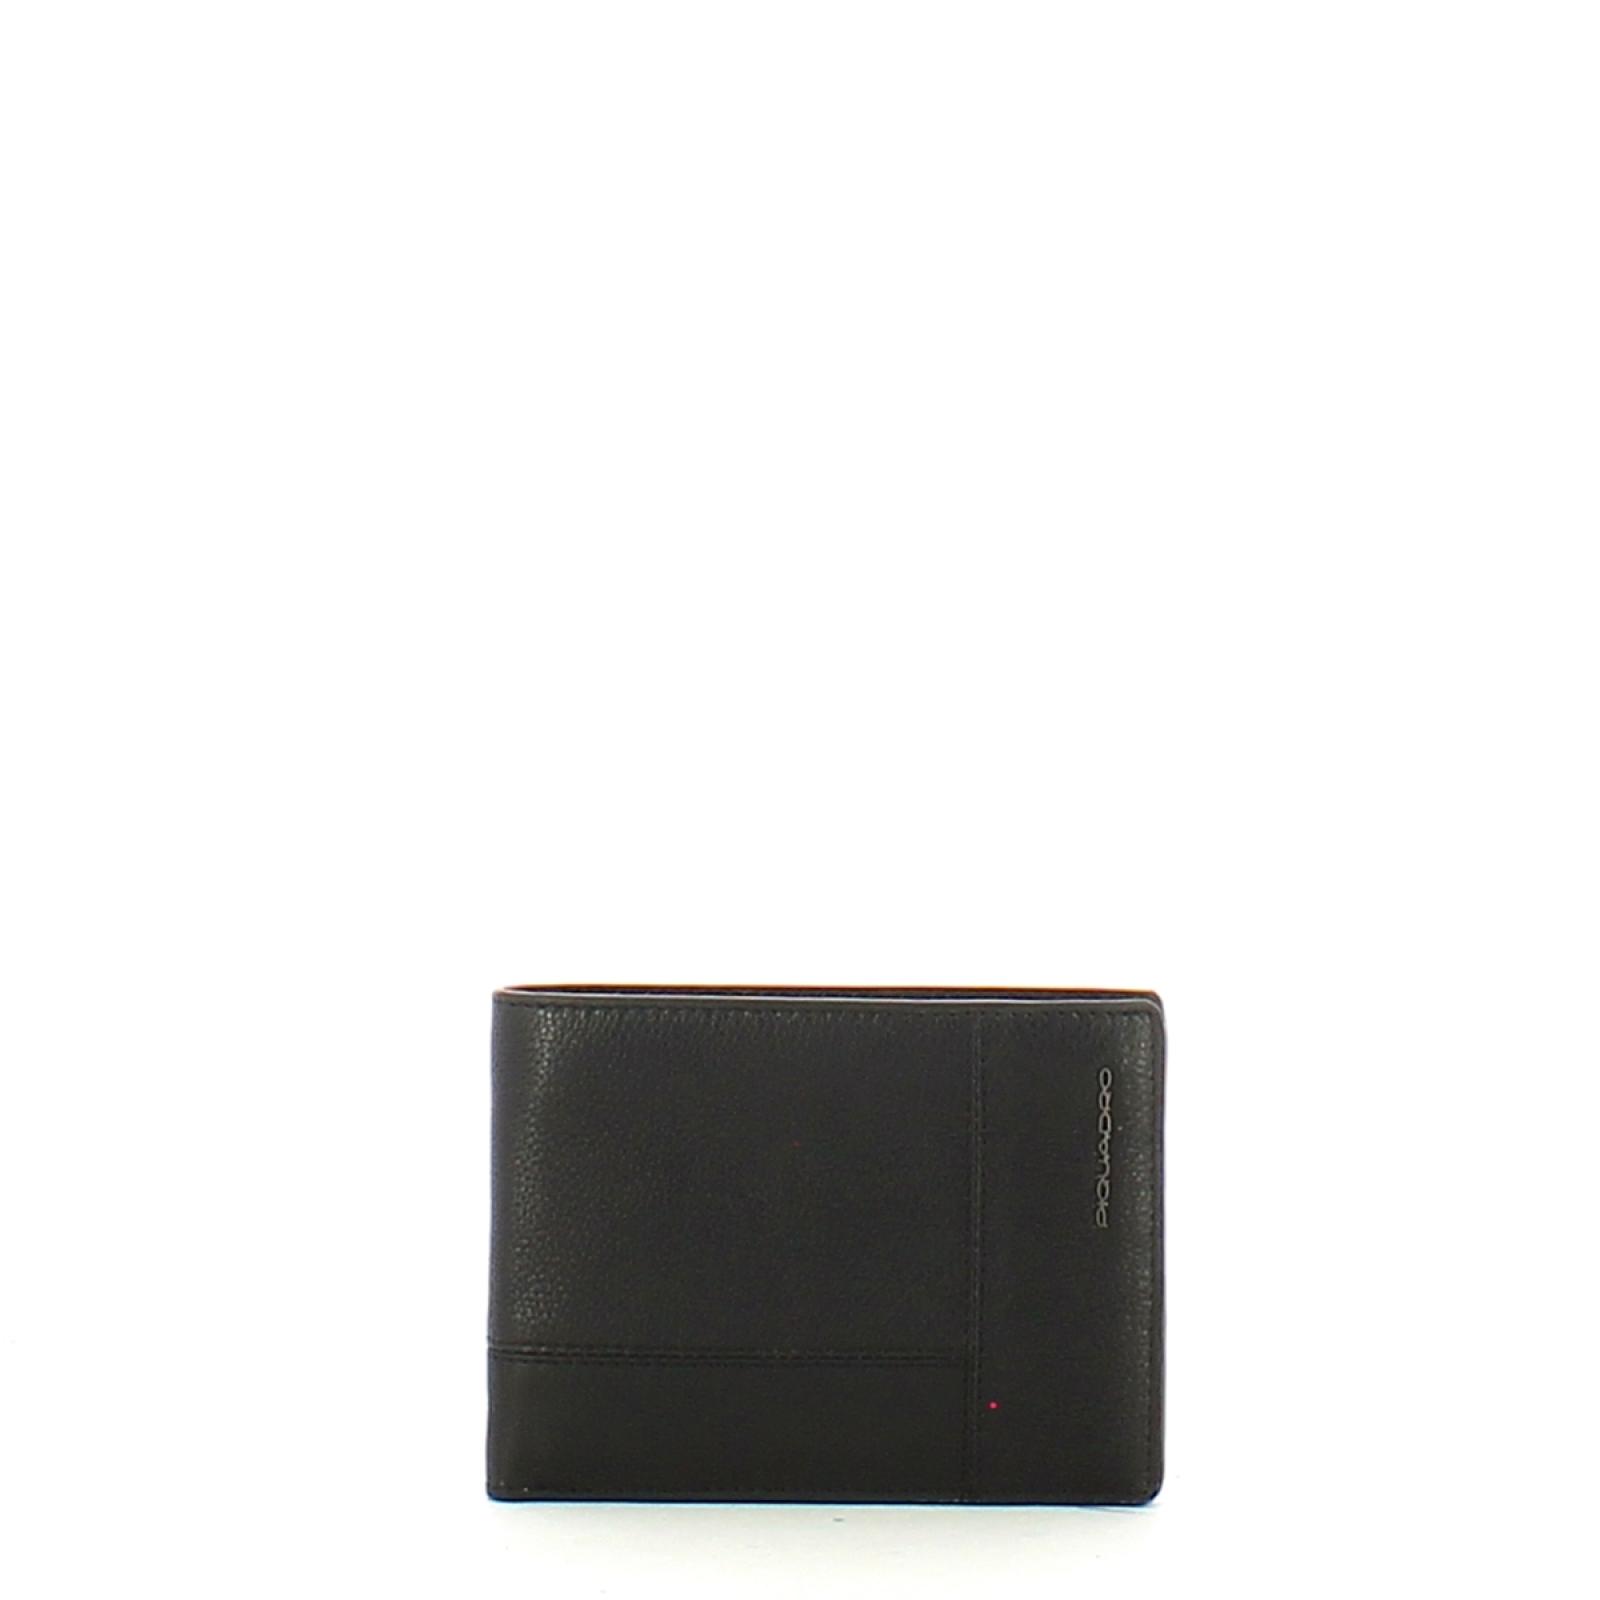 Piquadro Portafoglio RFID con portamonete Ronnie - 1